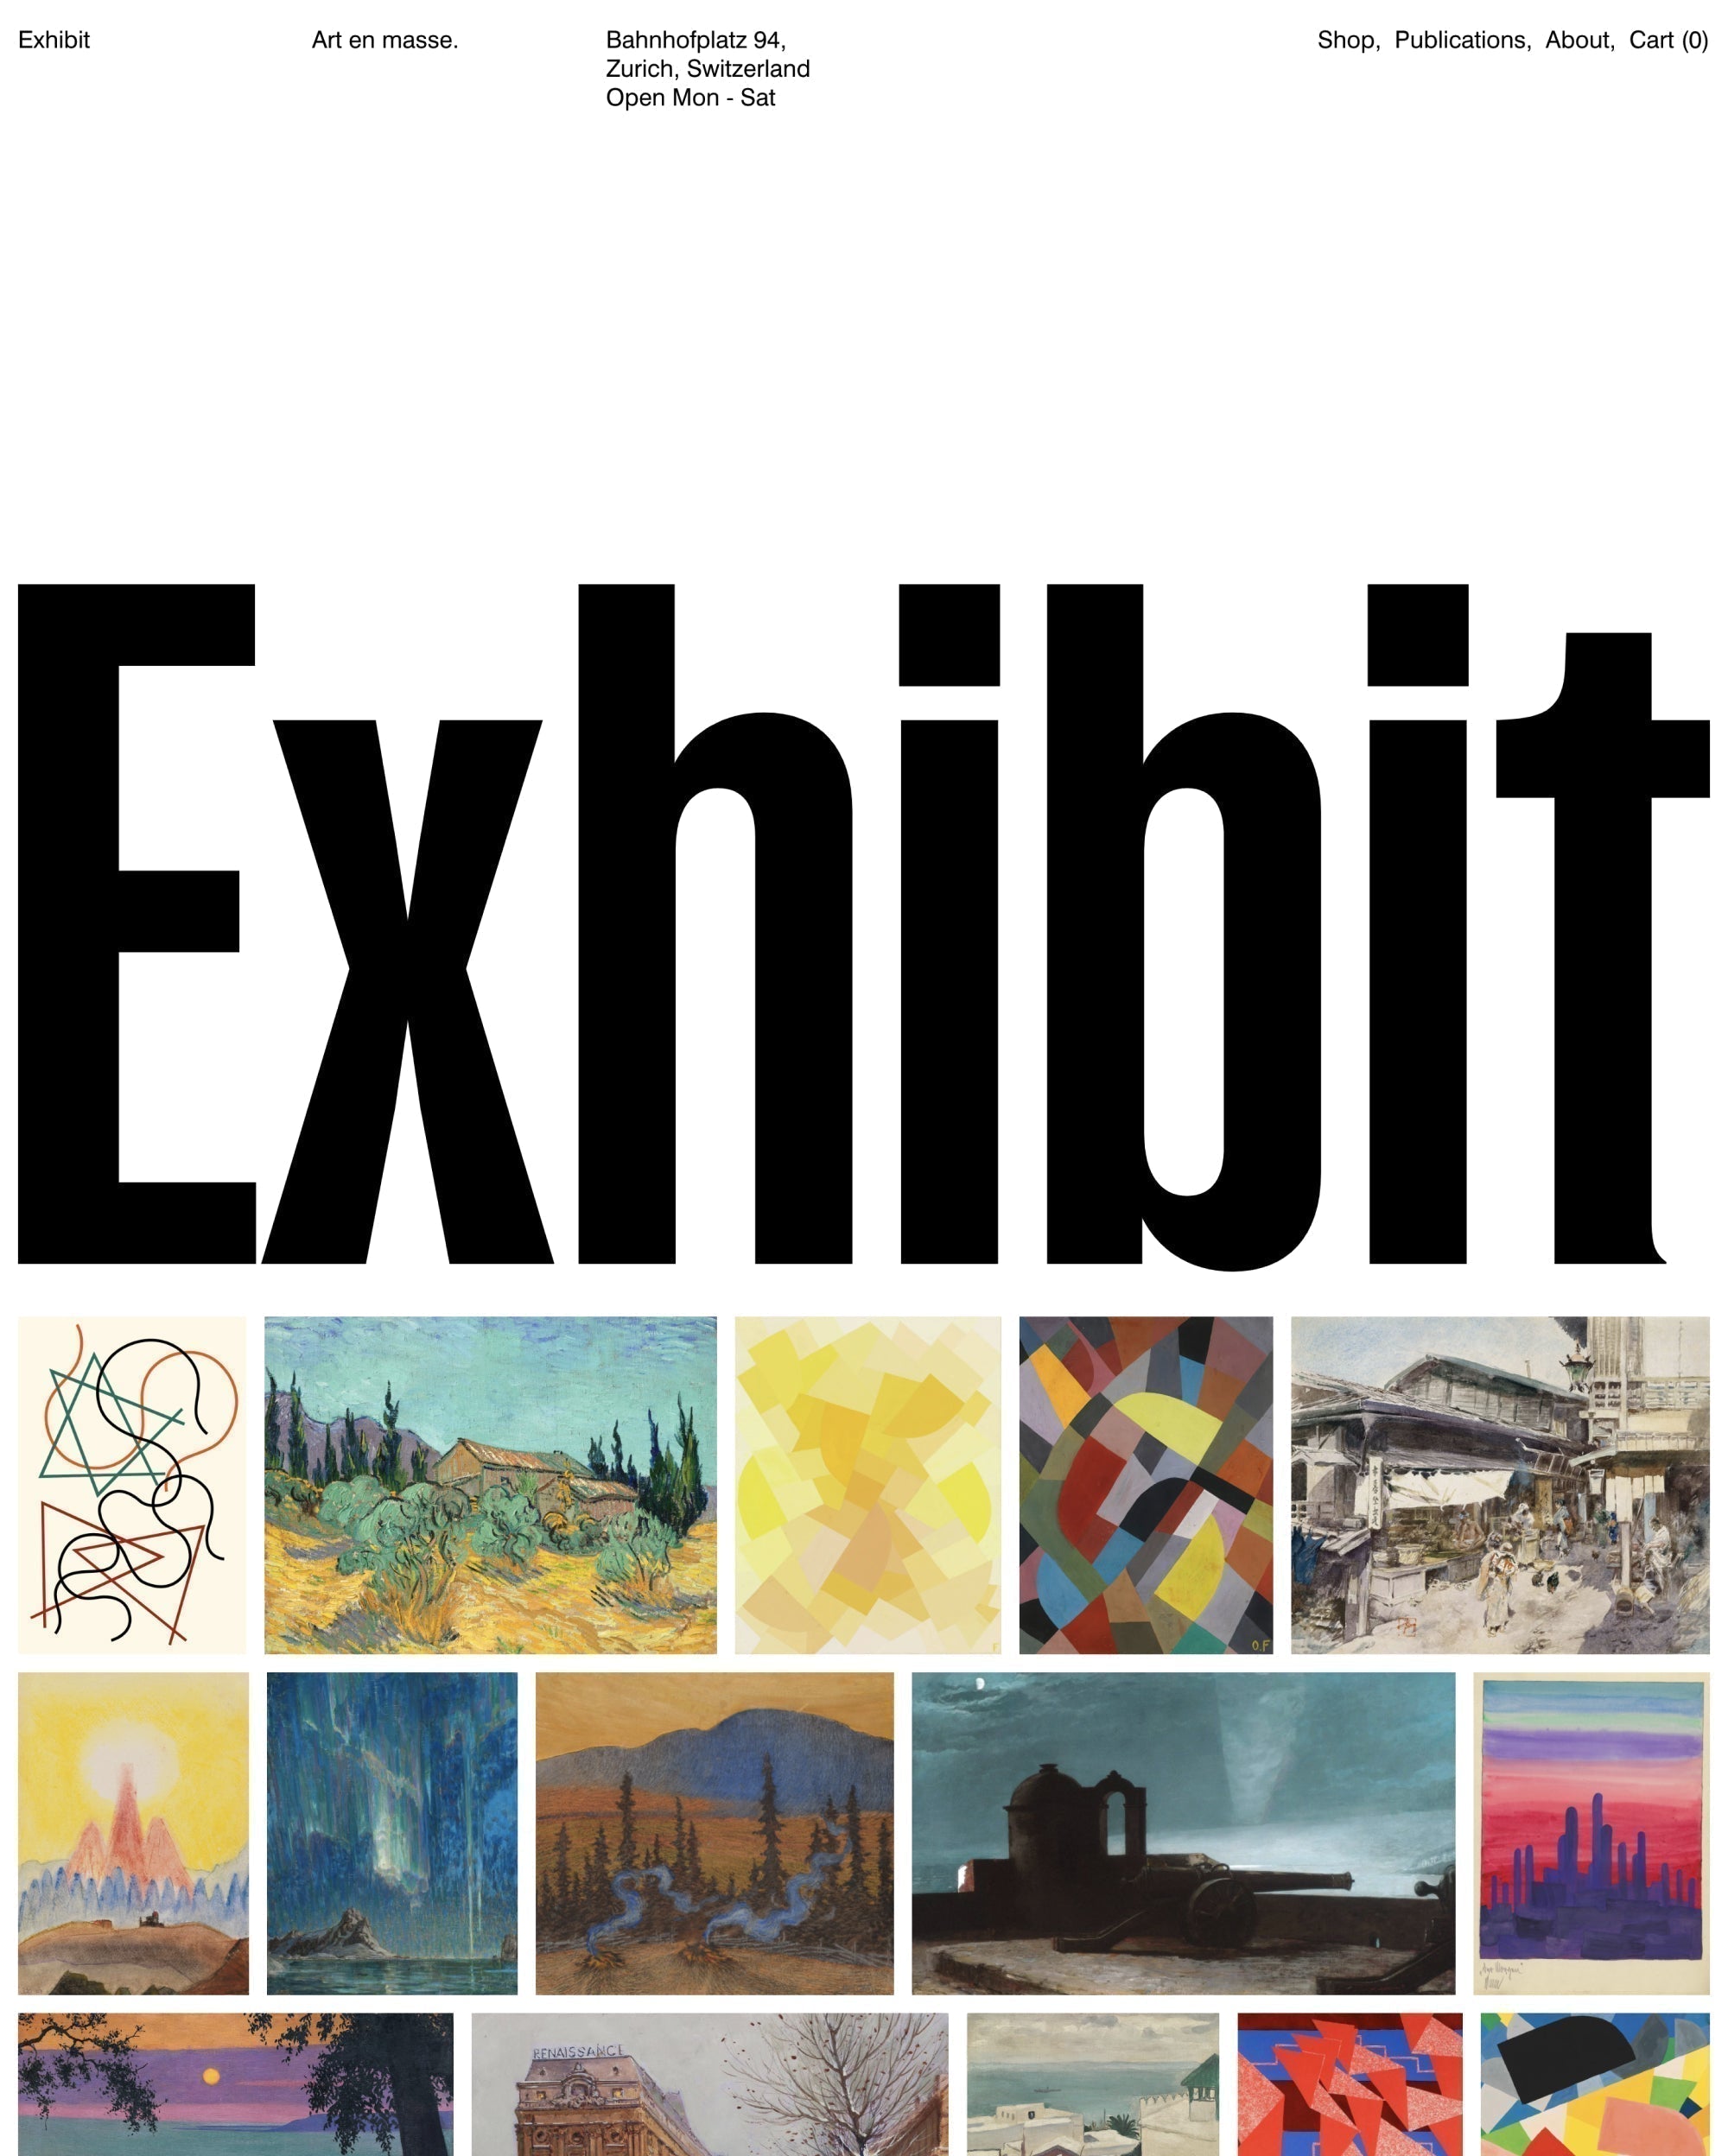 Anteprima in versione desktop del tema Exhibit nello stile “Art”